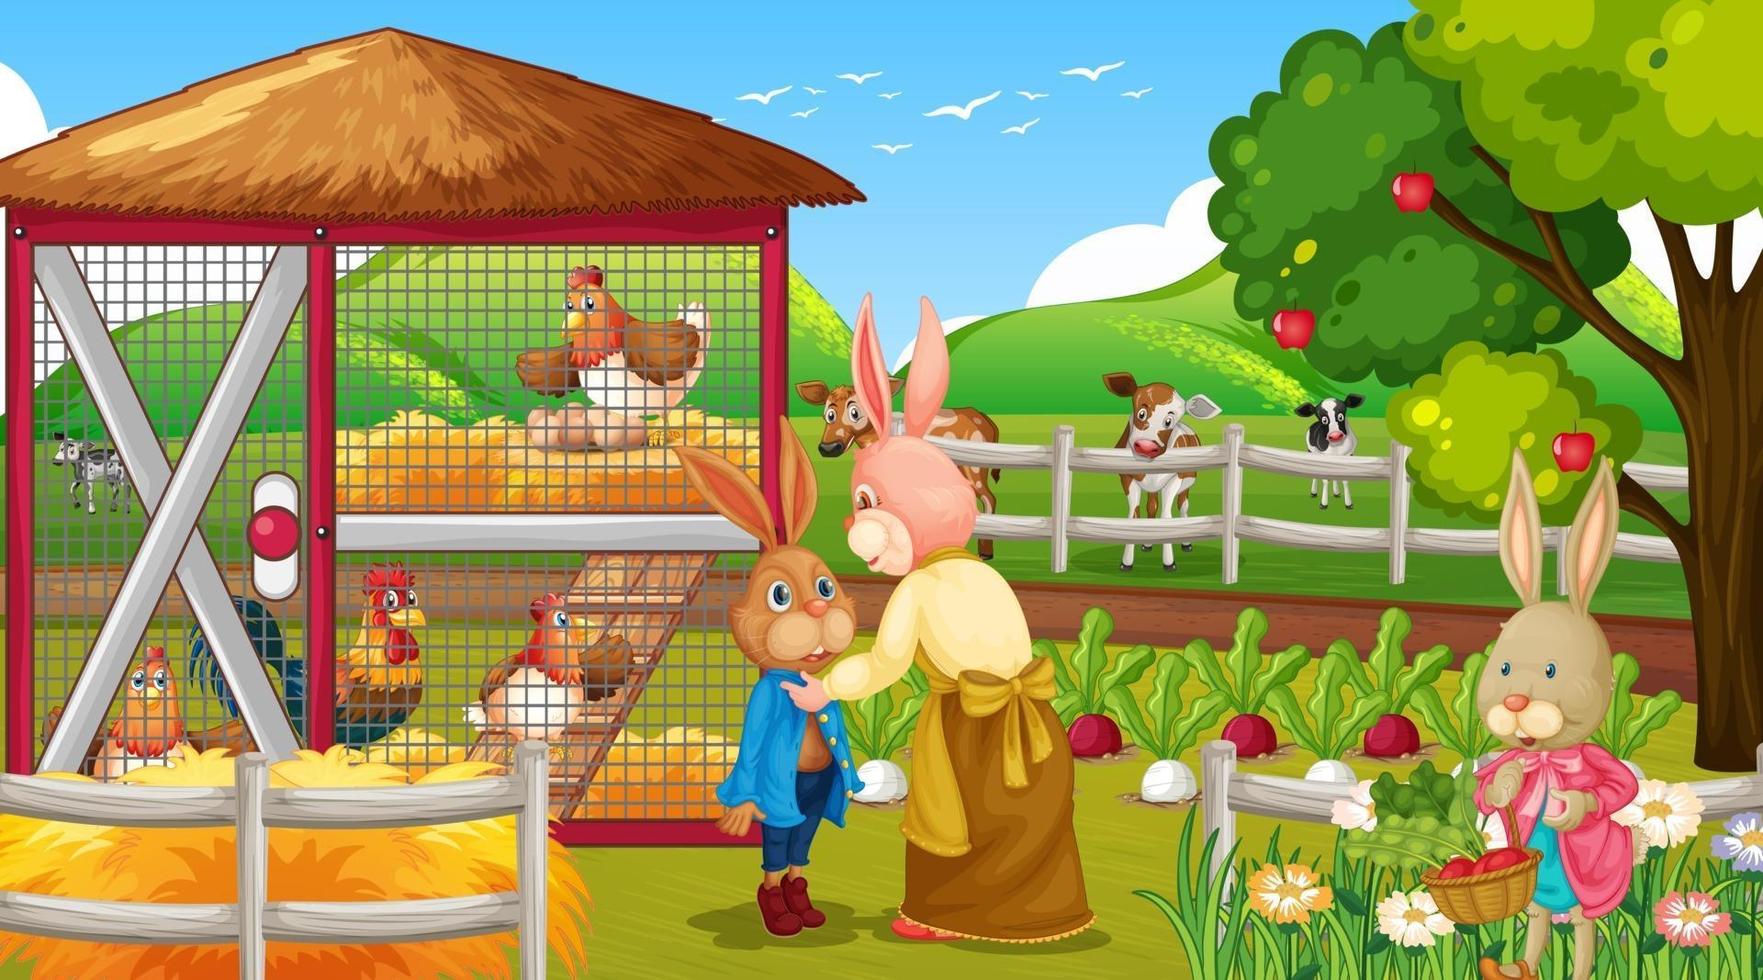 Garden scene with many rabbits cartoon character vector